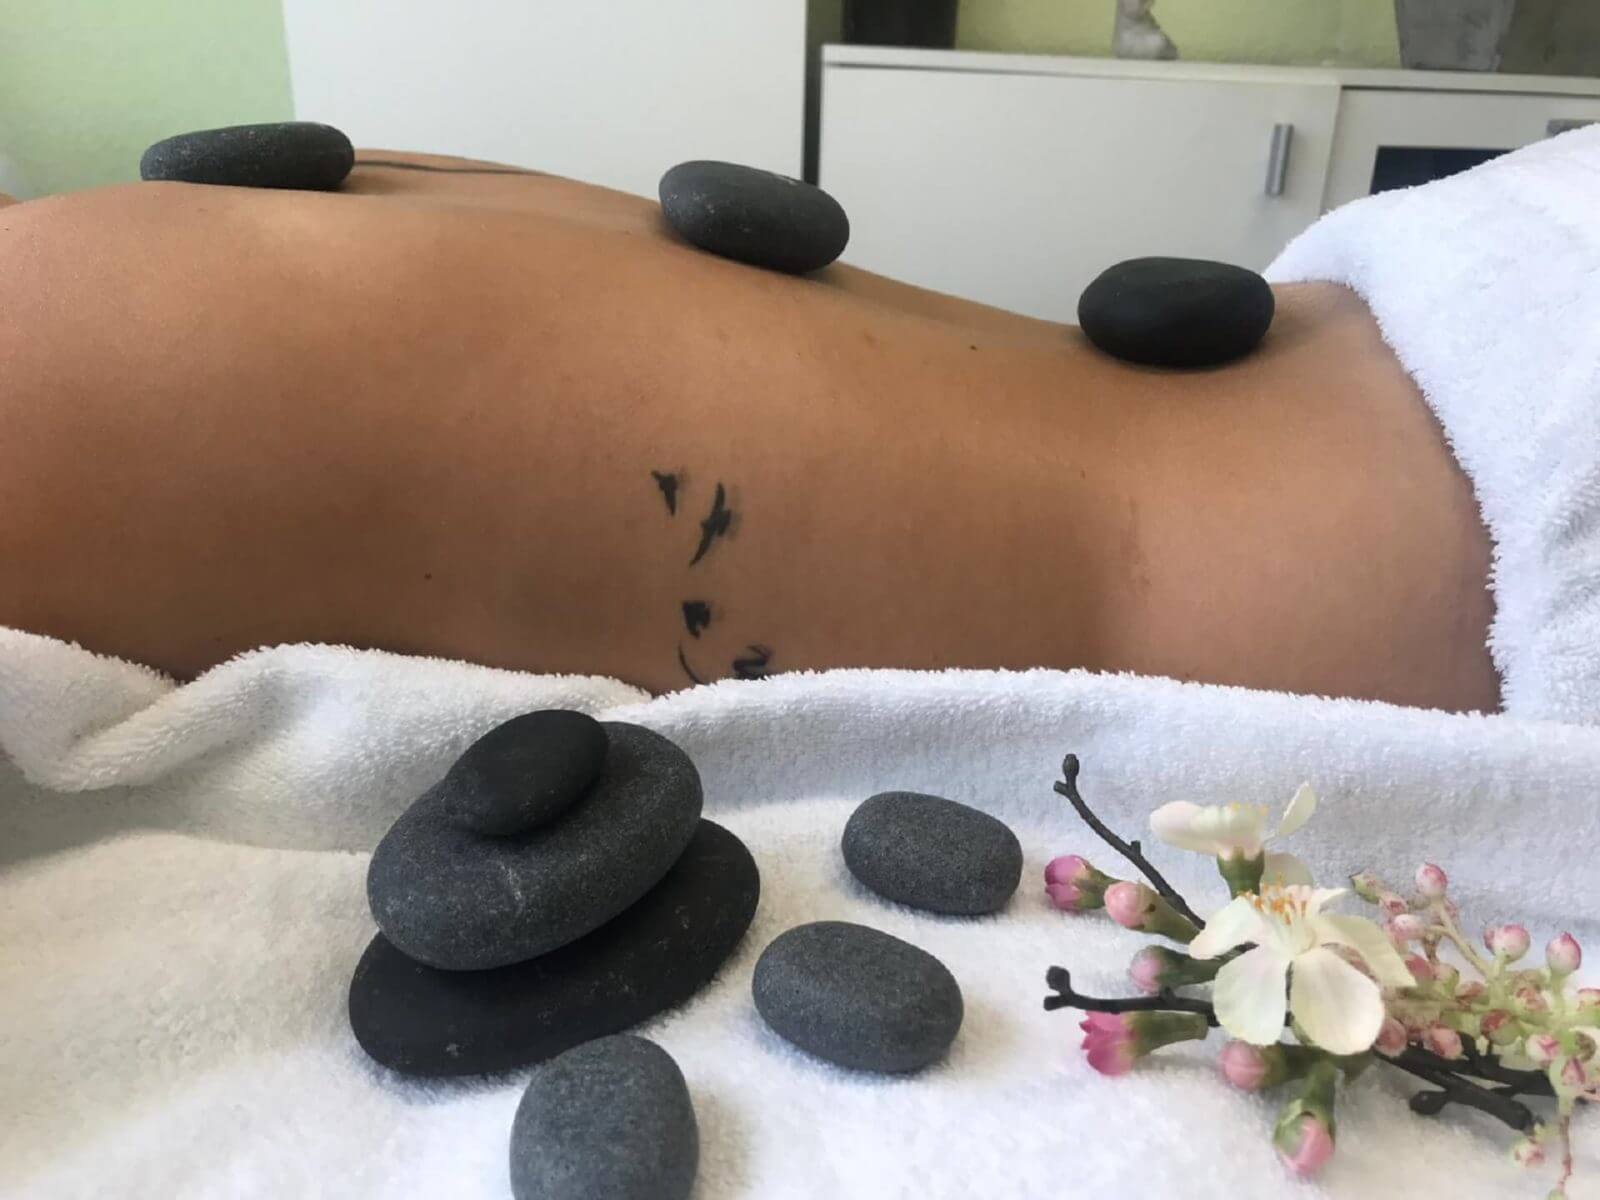 Impression von Massage mit heißen Steinen